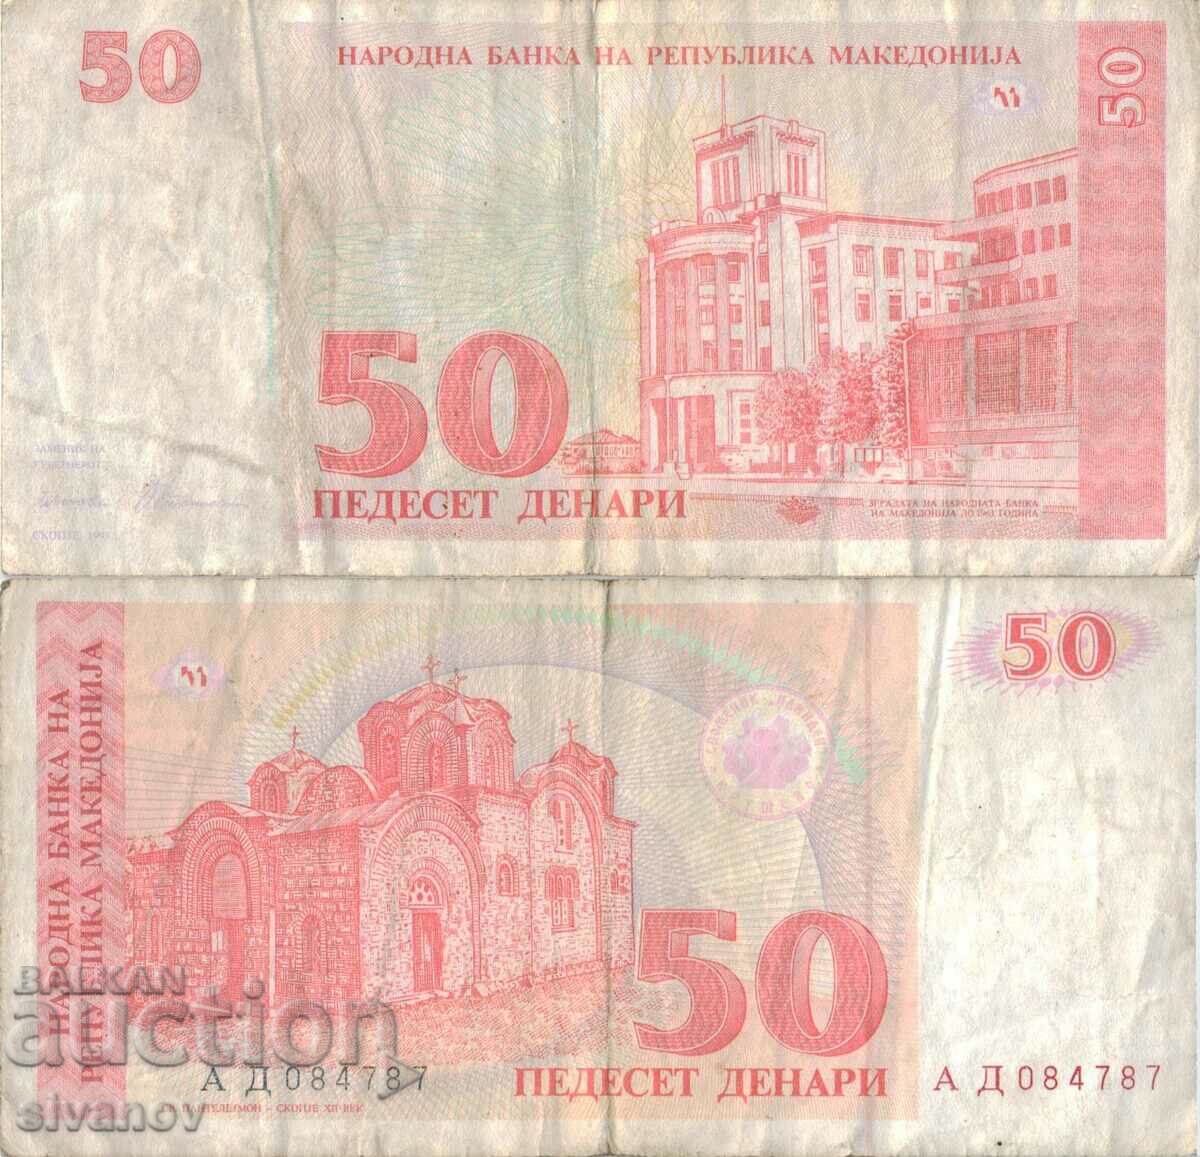 Μακεδονία 50 denar τραπεζογραμμάτιο 1993 #5219